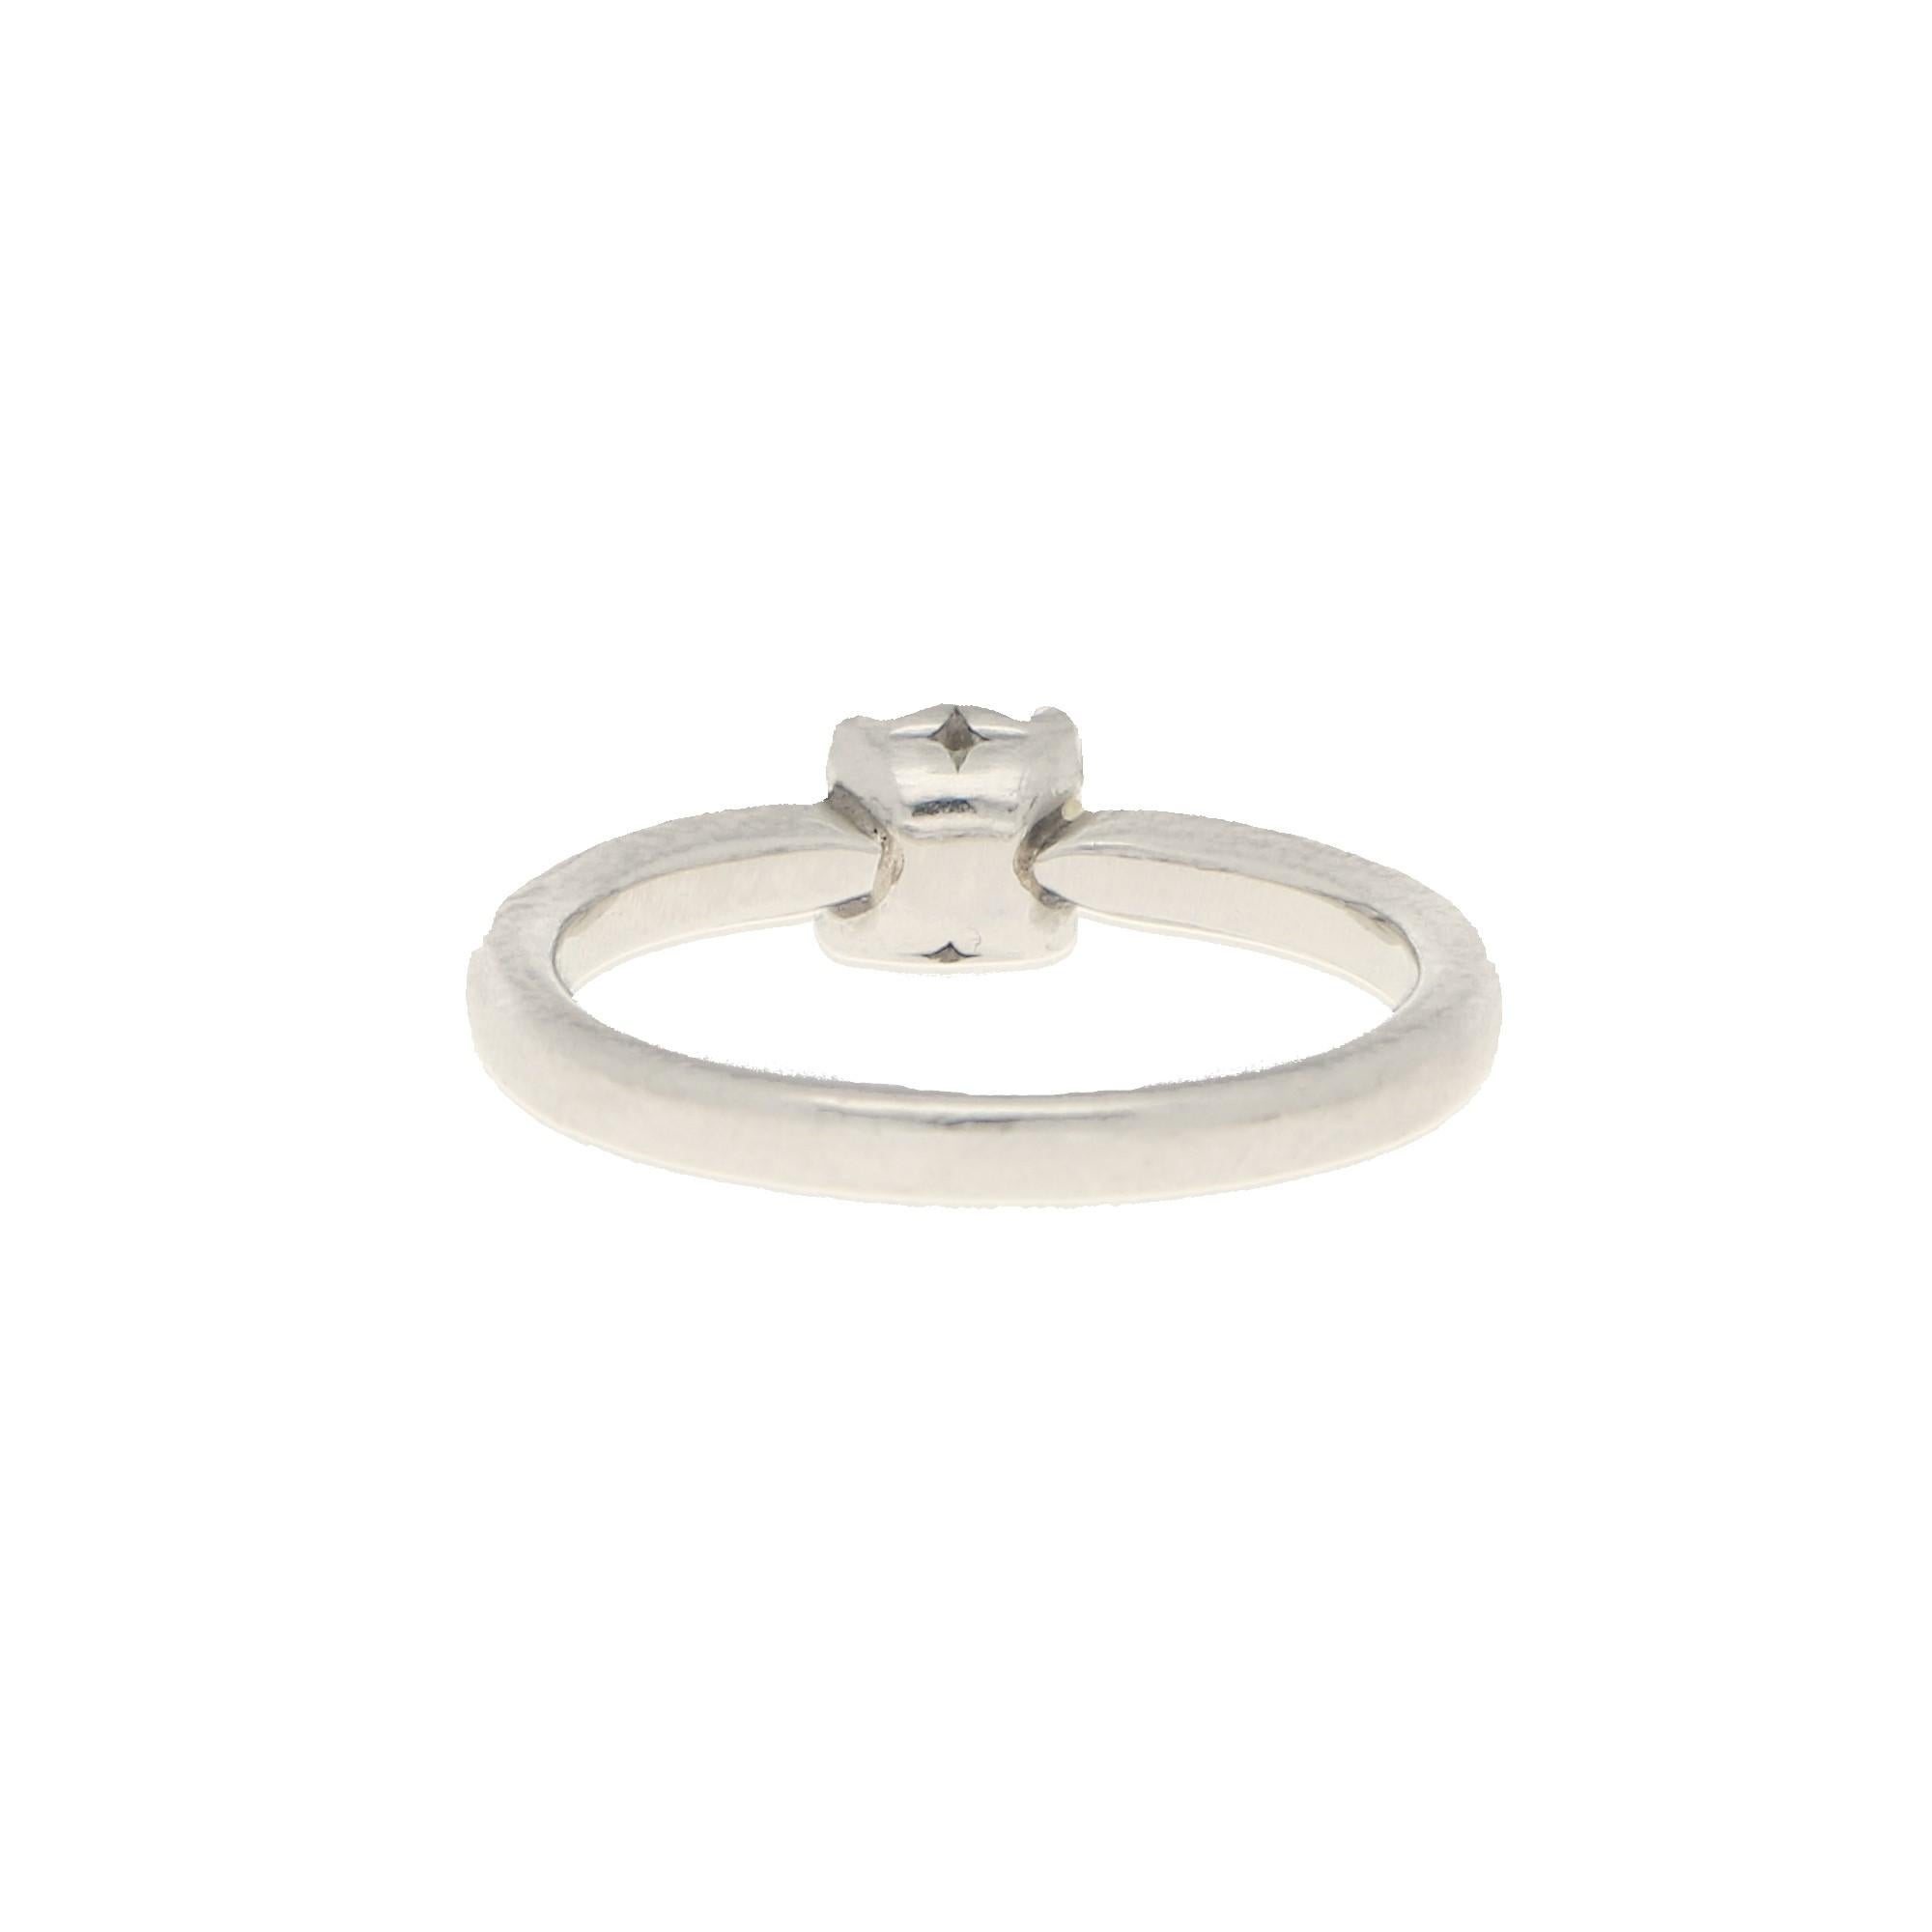 Contemporary De Beers Signature Solitaire Diamond Ring in Platinum 0.52 Carat